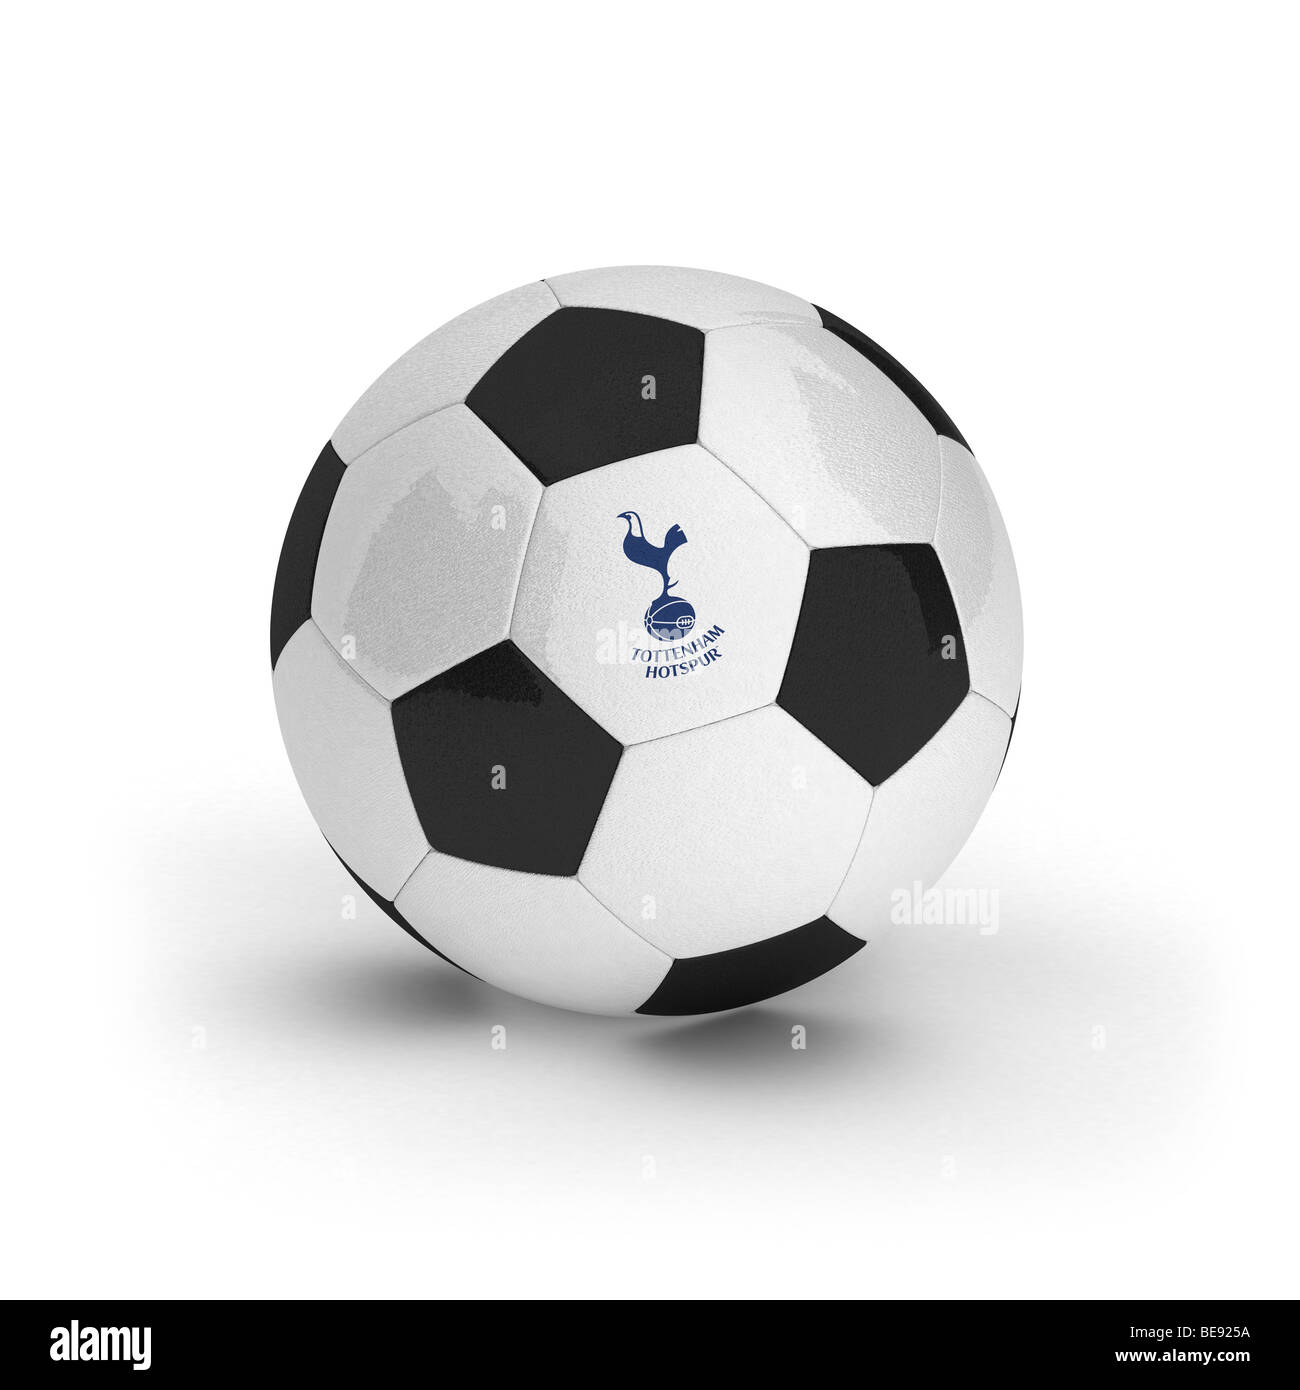 Tottenham Hotspur Football Club emblème sur un ballon de foot Banque D'Images